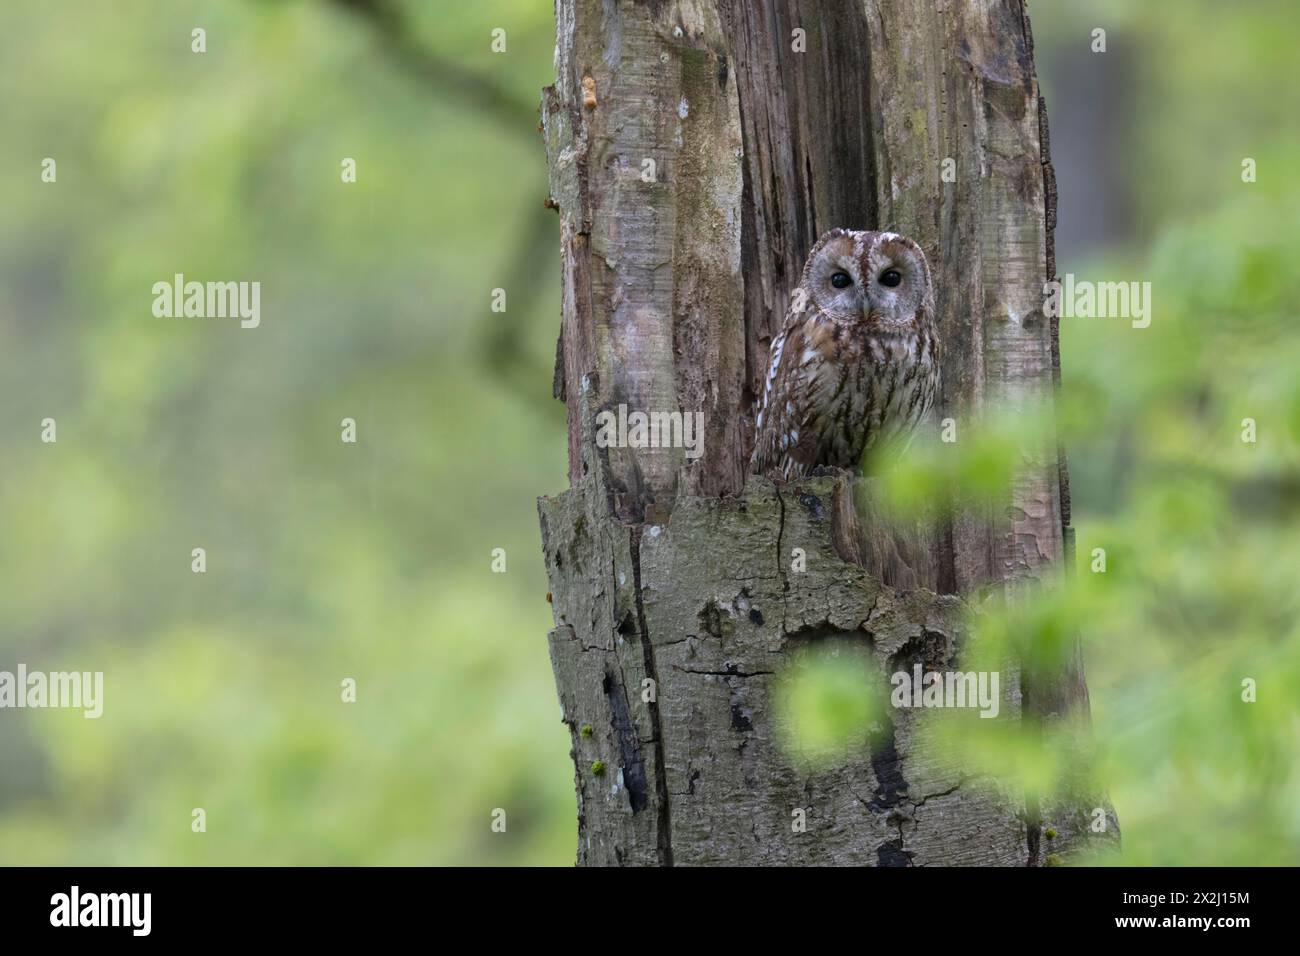 Tawny owl, Wittlich, Eifel, Germany Stock Photo